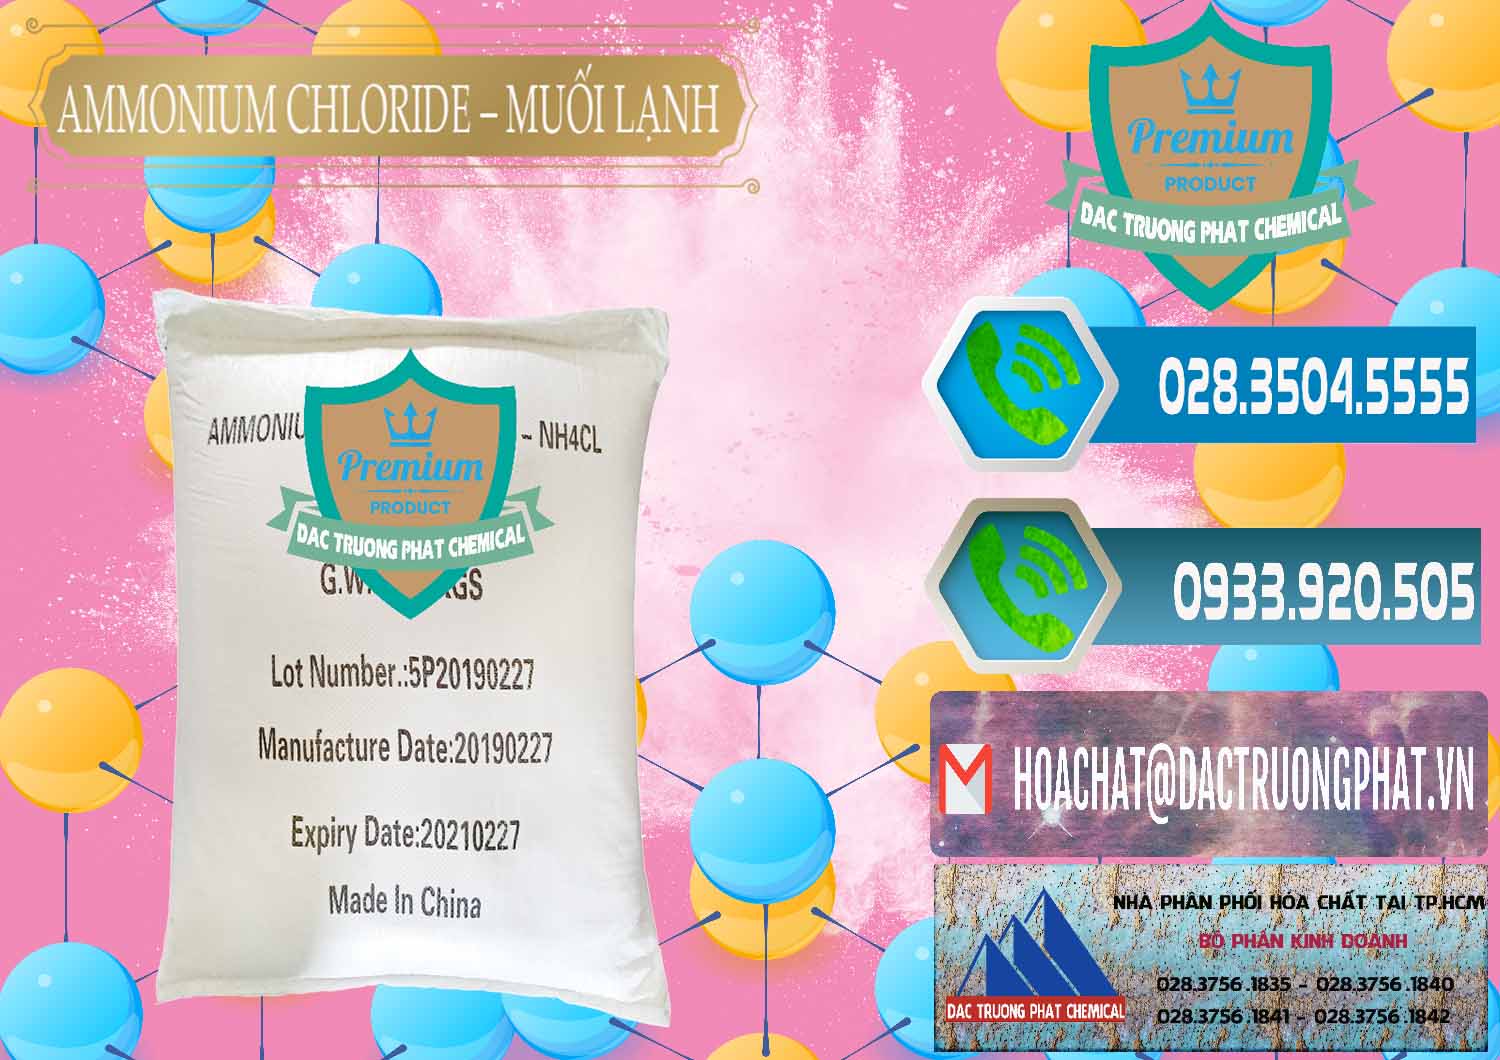 Nơi bán & cung ứng Ammonium Chloride - Muối Lạnh NH4CL Trung Quốc China - 0021 - Nhà phân phối & cung cấp hóa chất tại TP.HCM - congtyhoachat.net